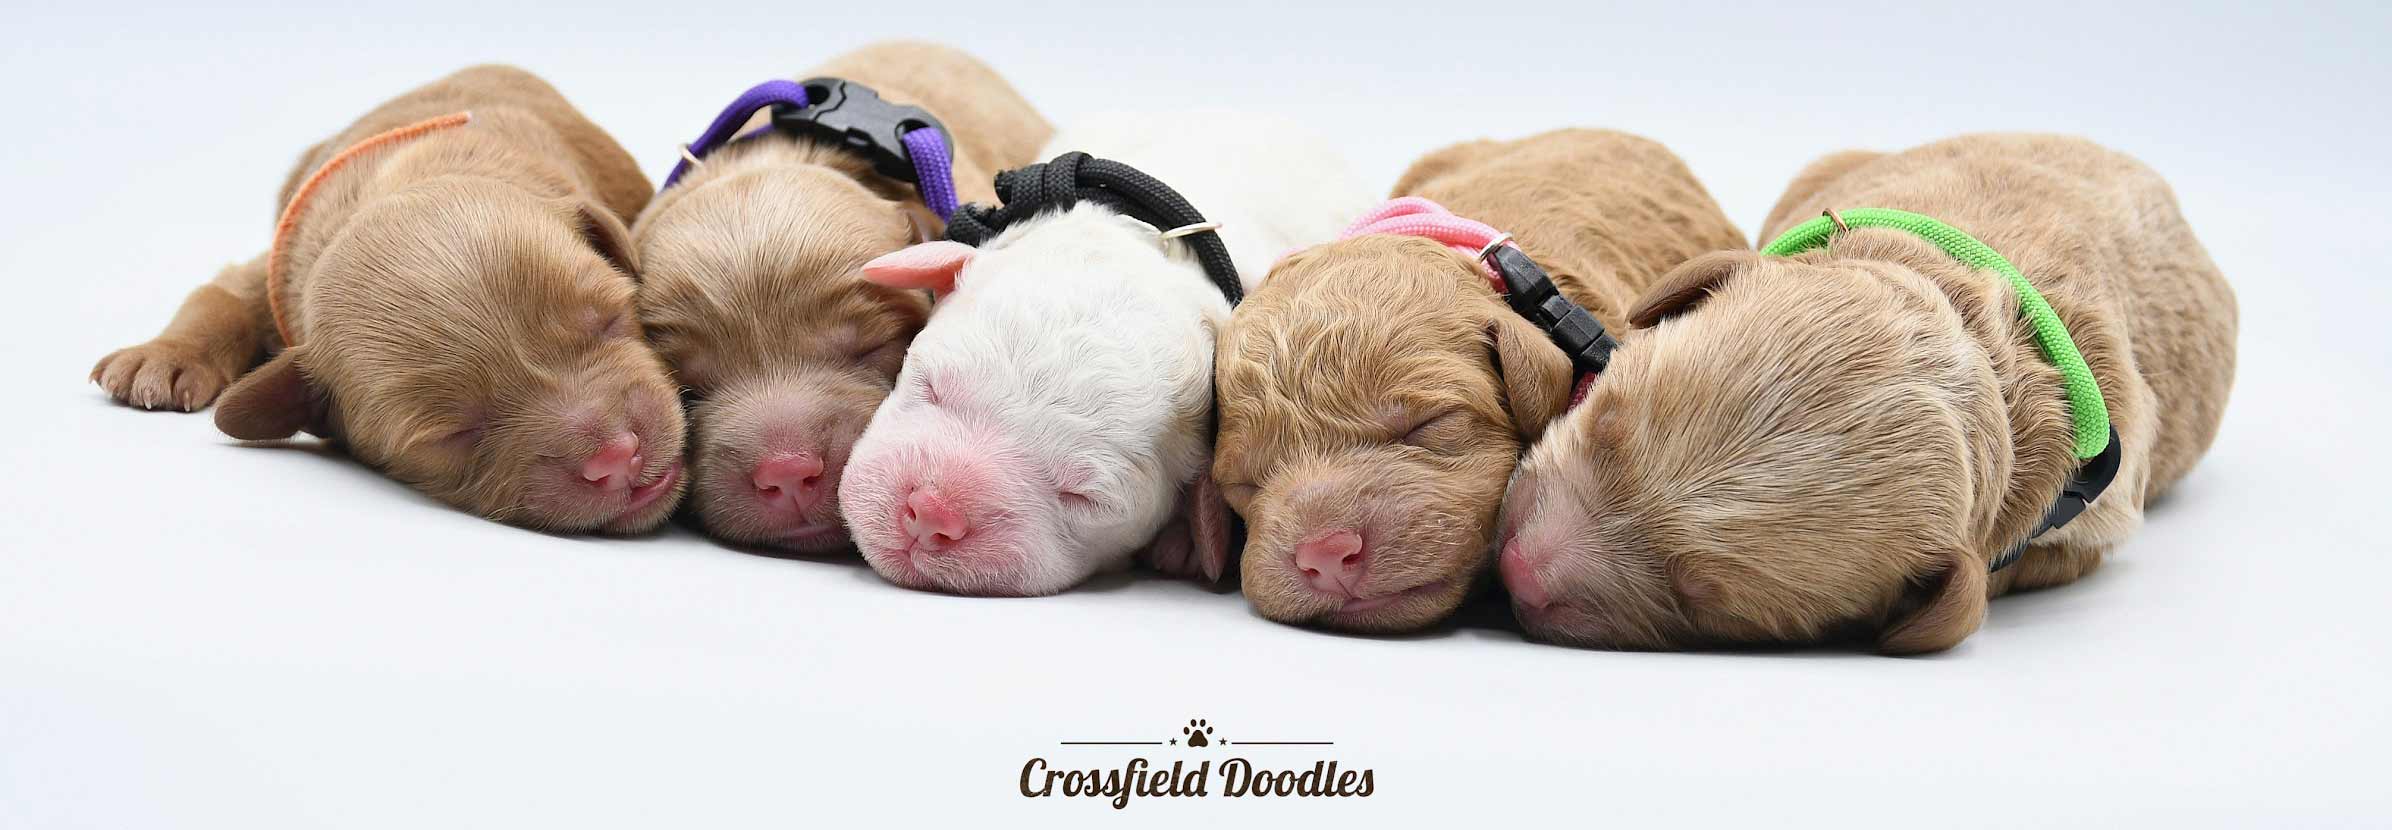 crossfield doodles puppies